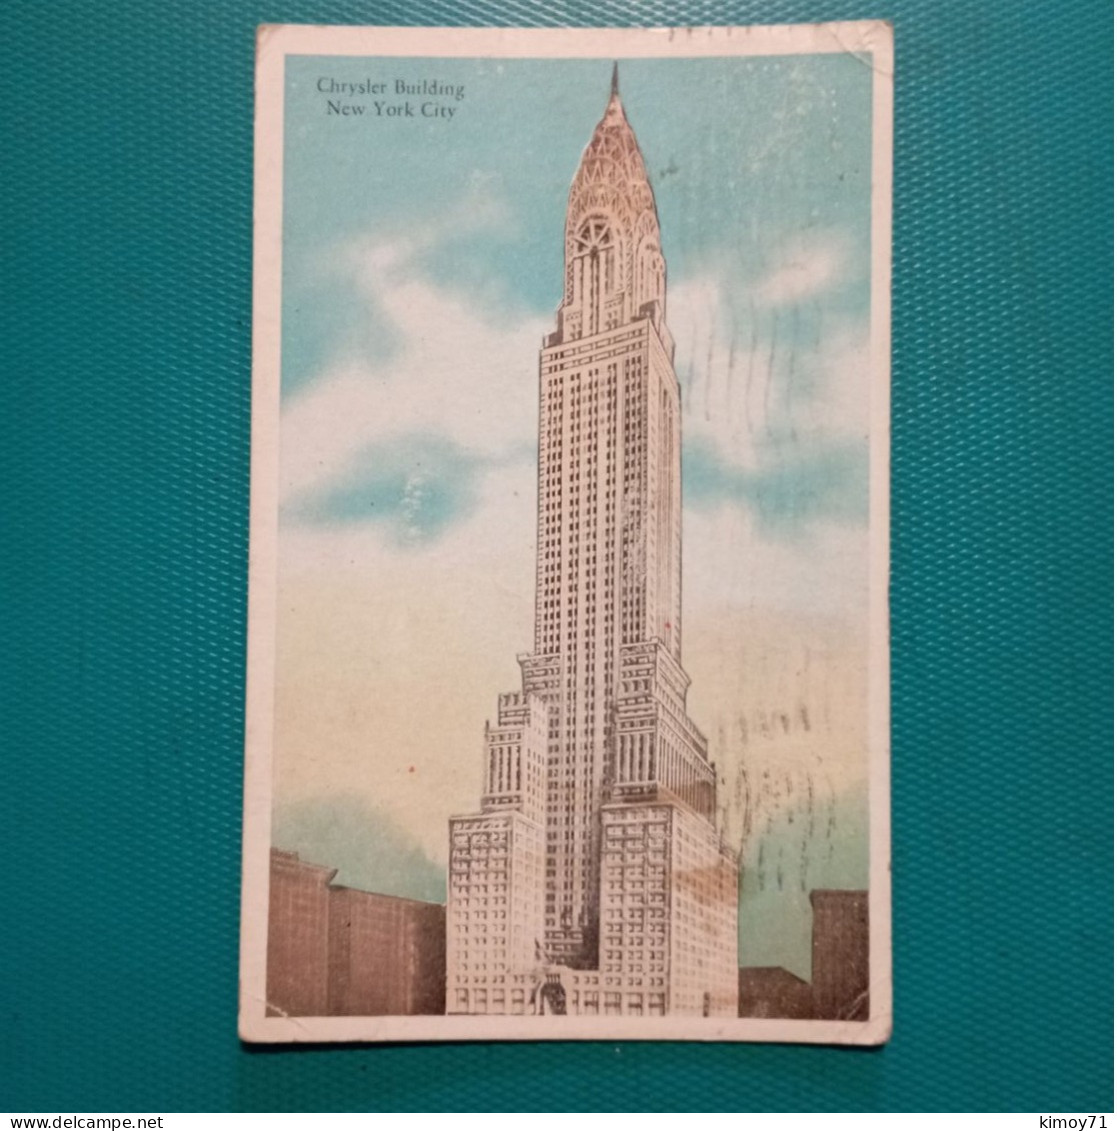 Chrysler Building New York City. 1931 - Chrysler Building